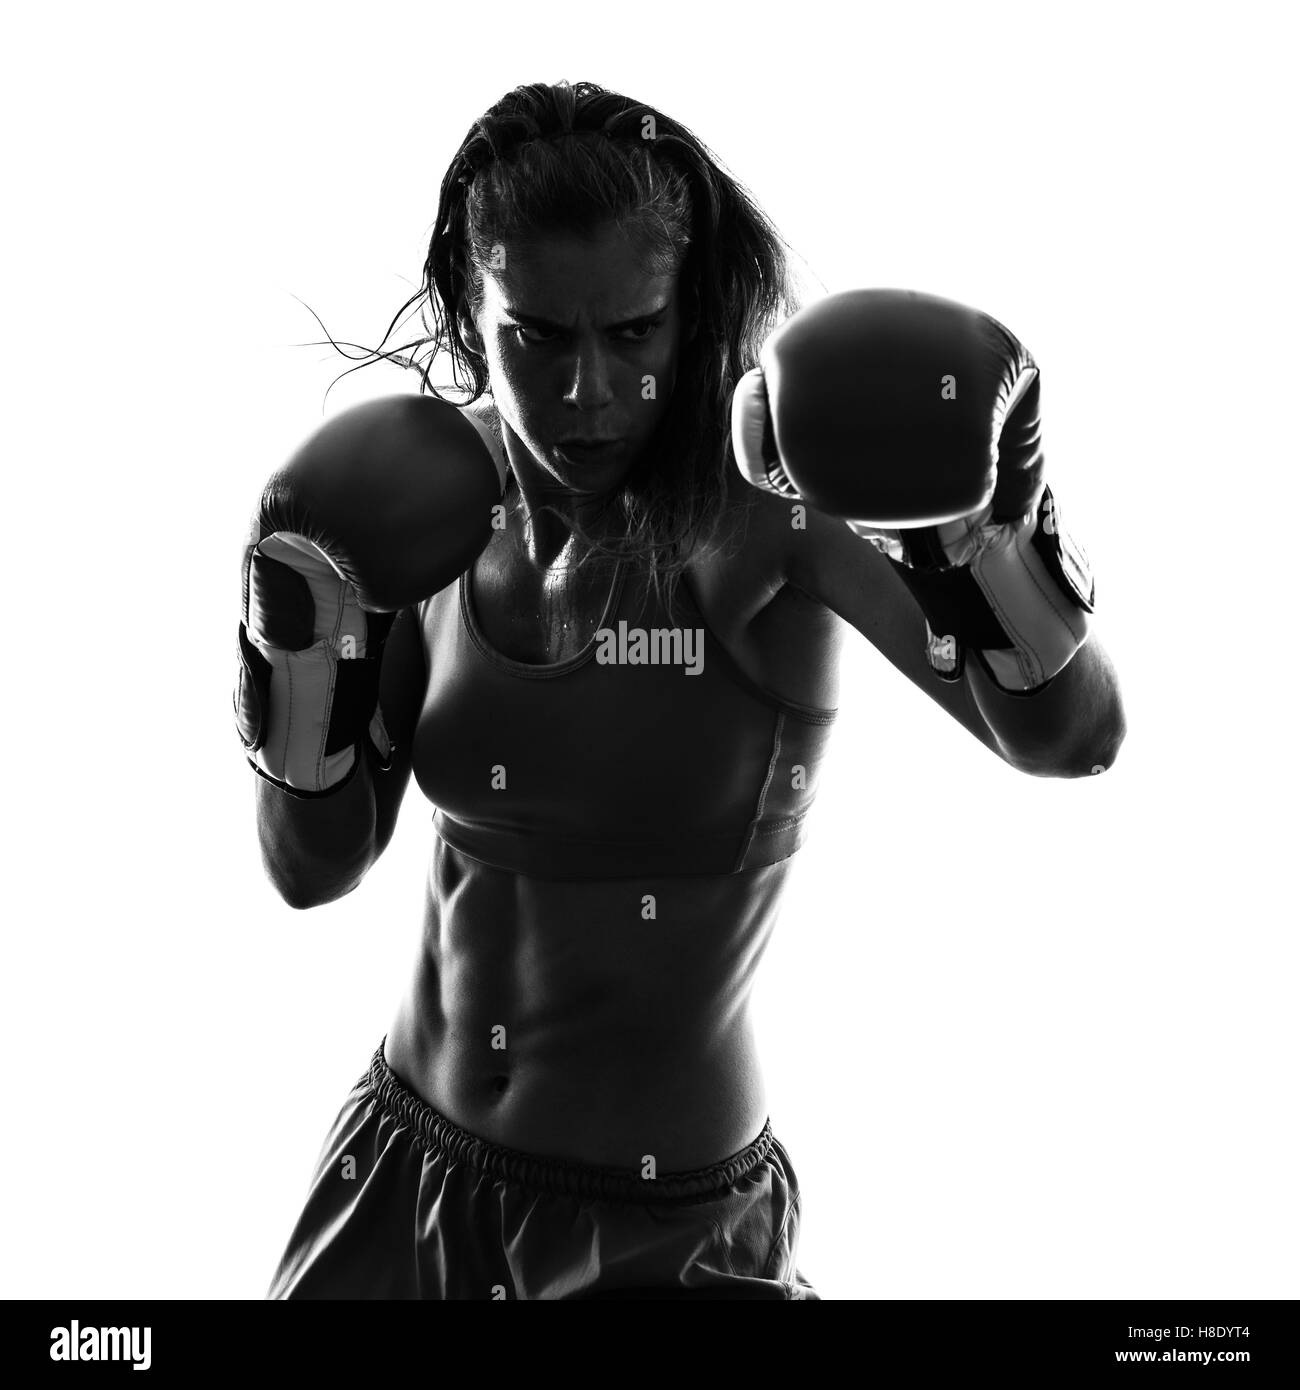 Une femme de kickboxing boxe boxeur en silhouette isolé sur fond blanc Banque D'Images